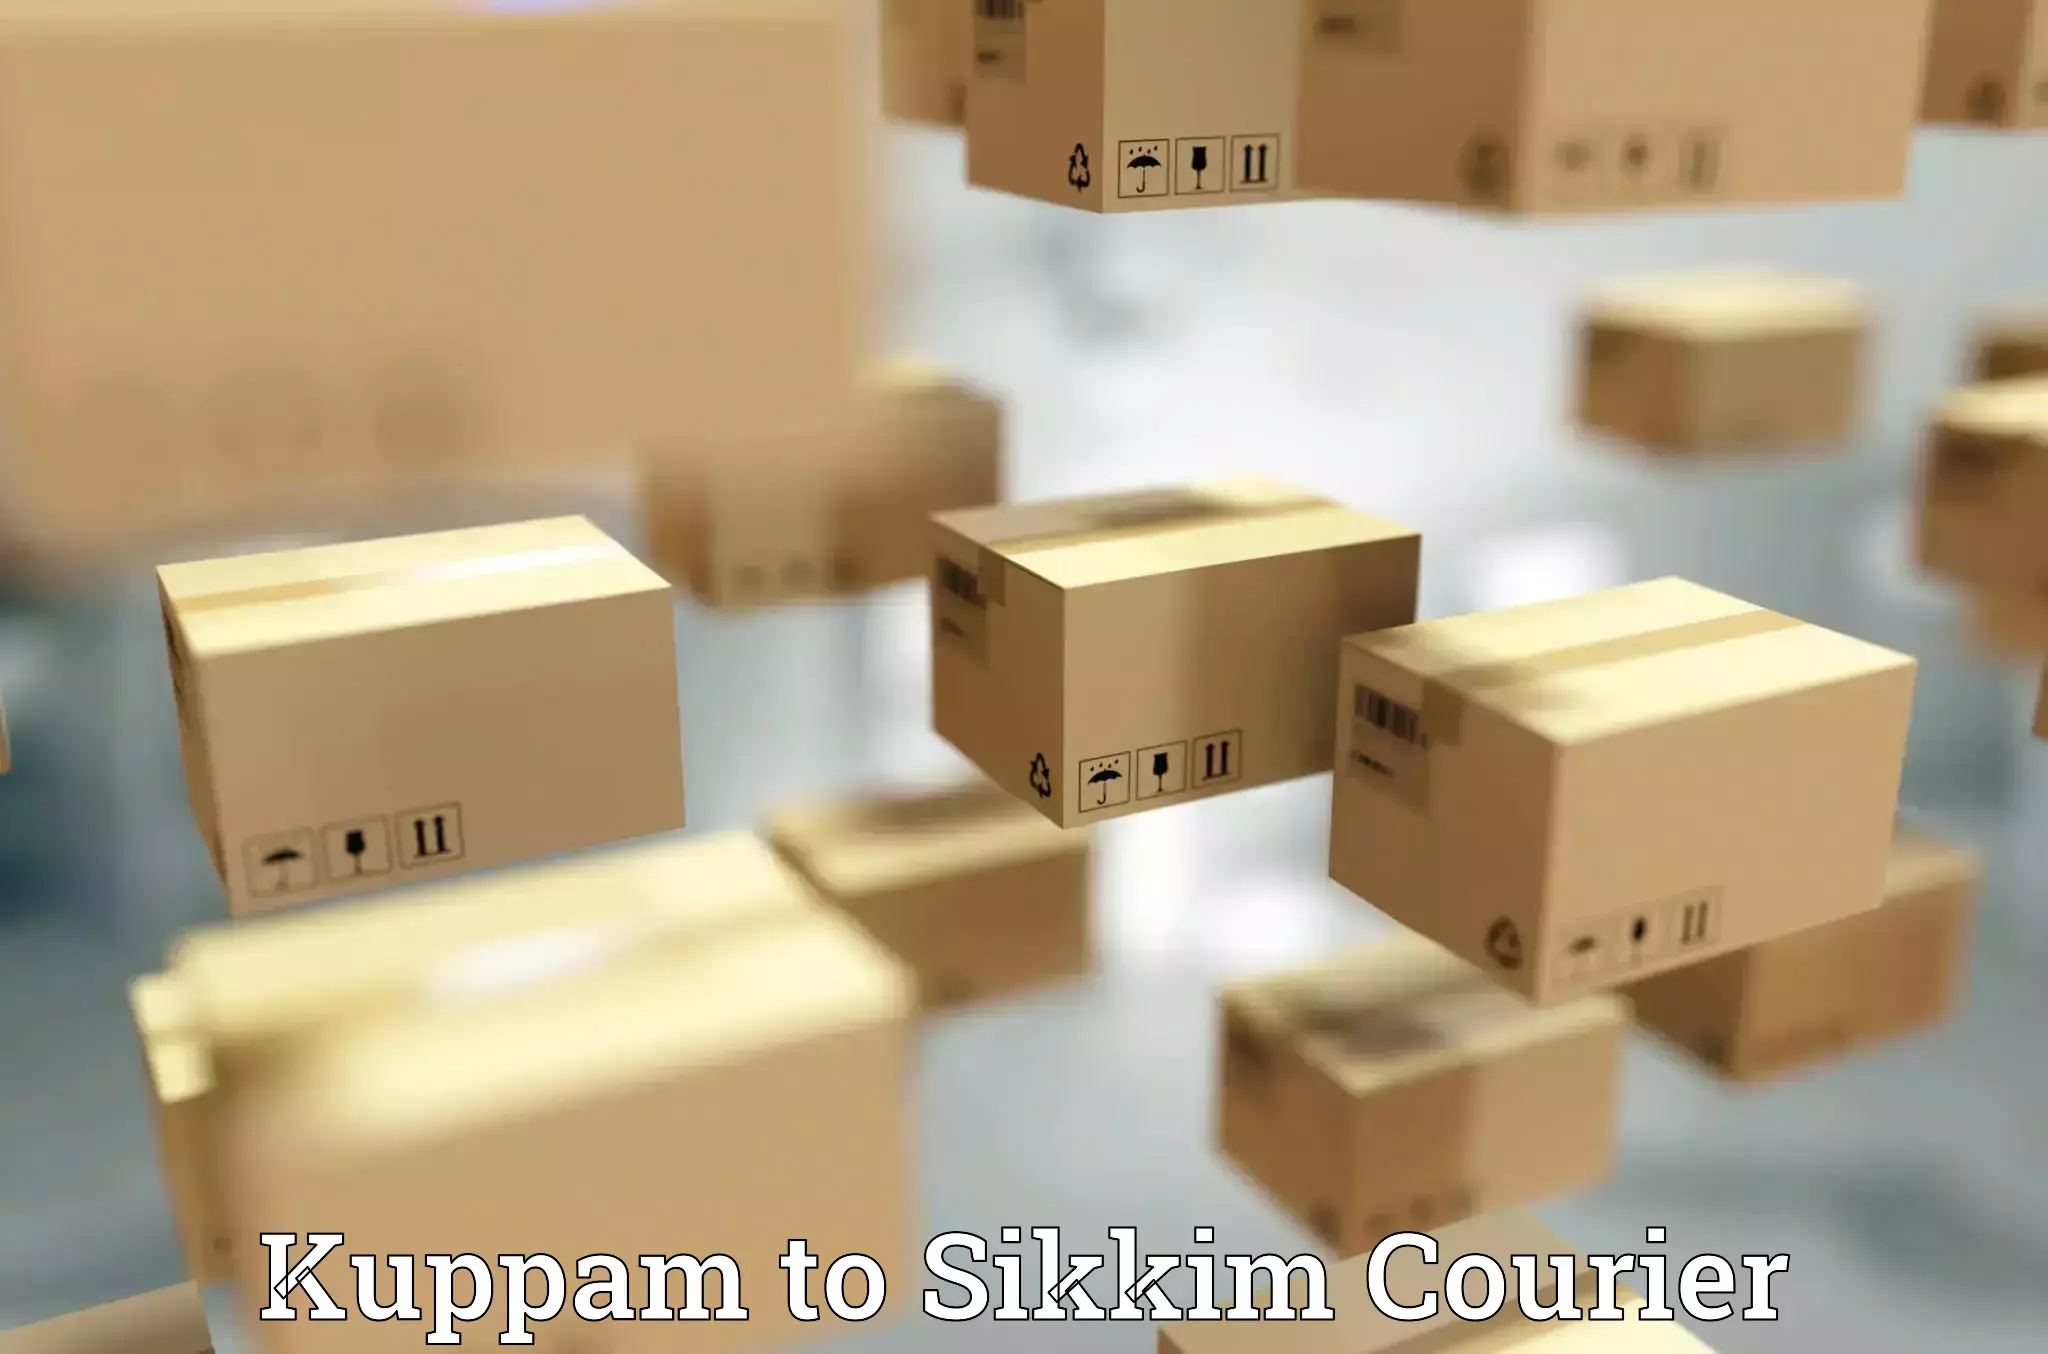 Bulk shipping discounts Kuppam to Geyzing